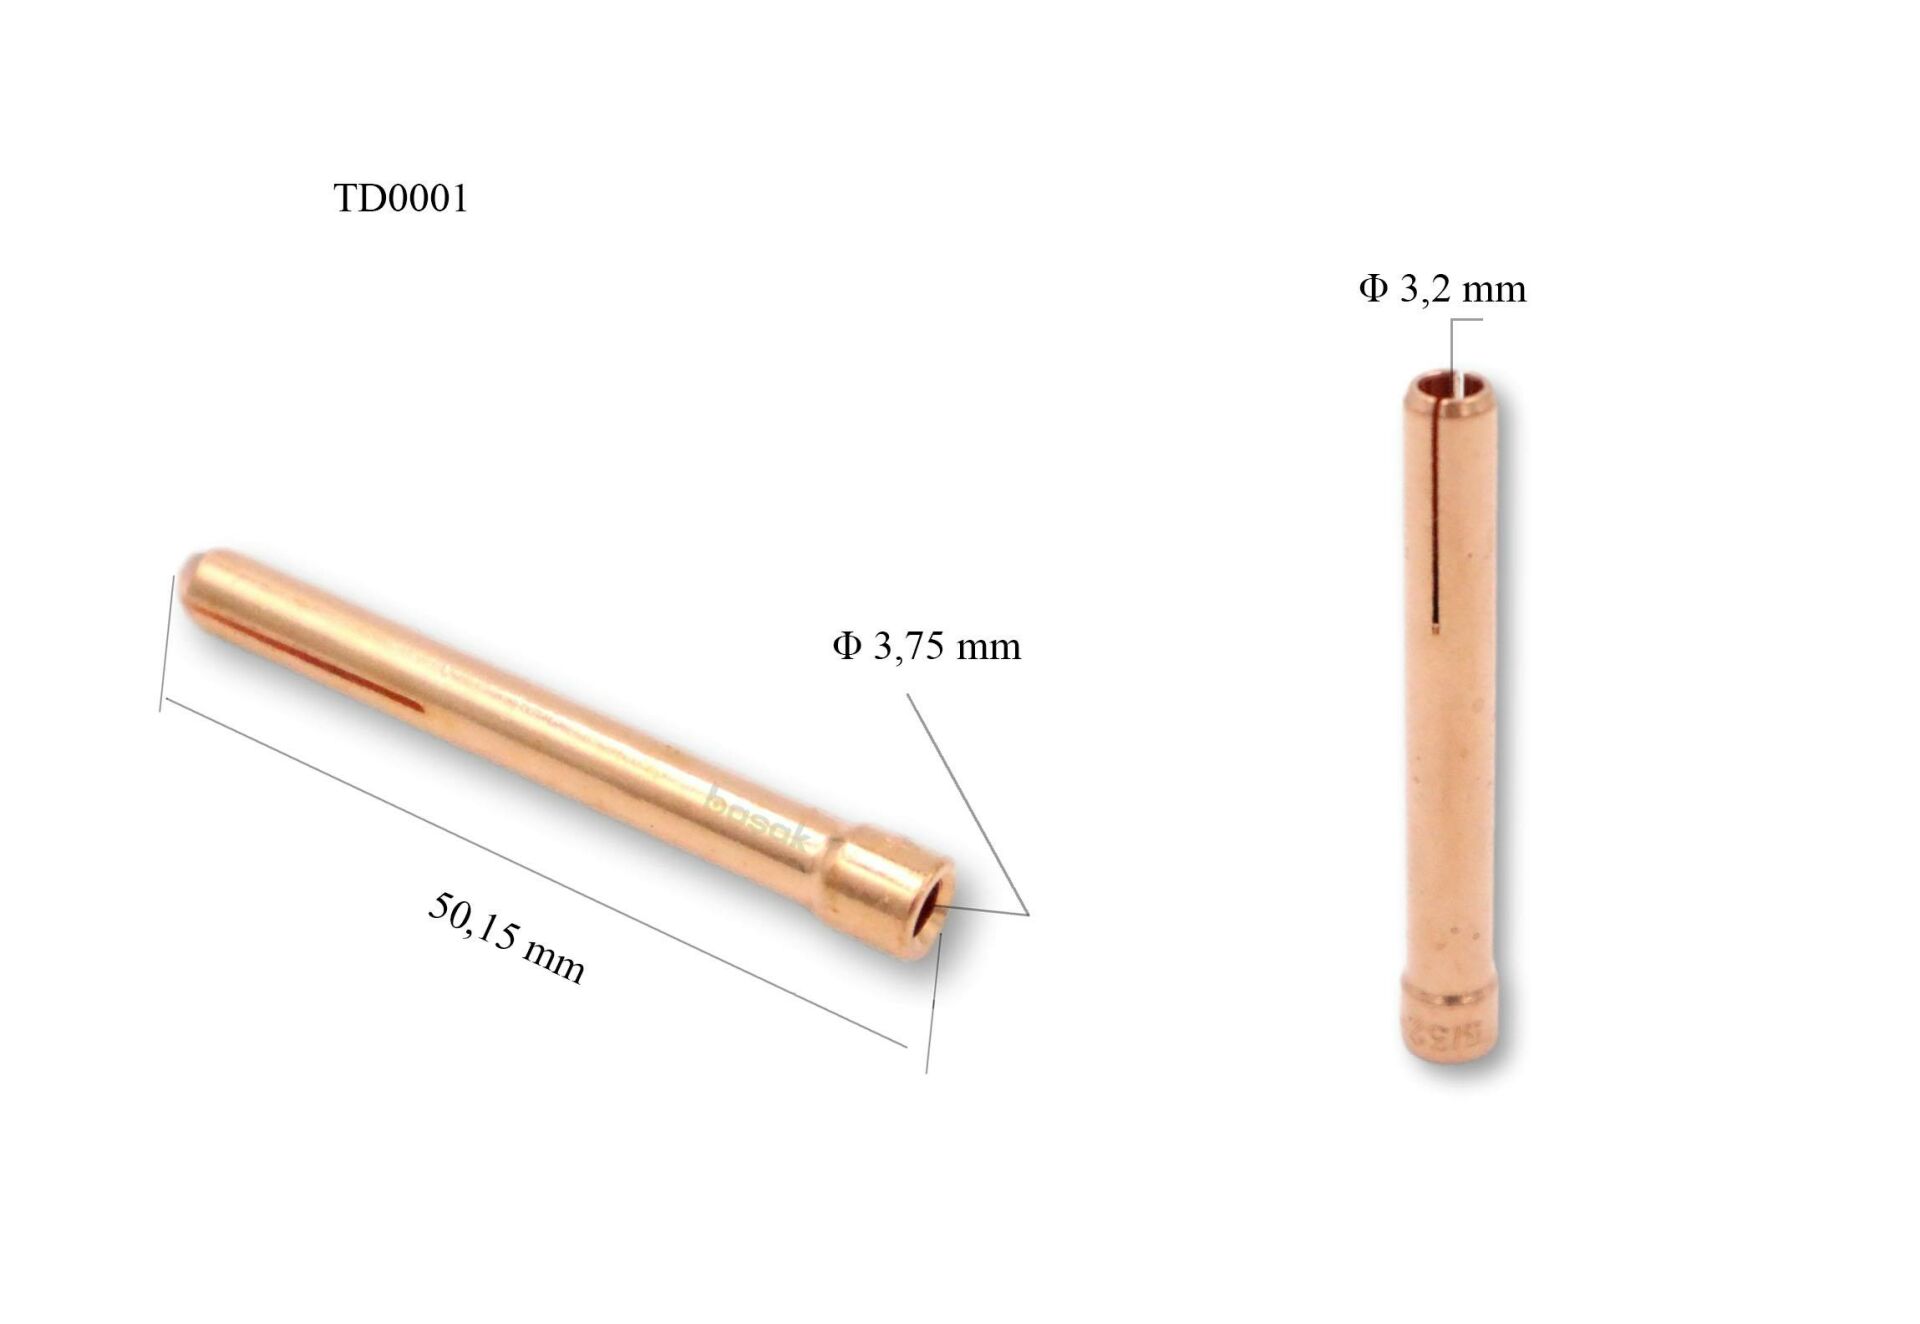 TD0001/32 3,2 mm Collet-Pens Tig 17-18-26 10N25 Trafimet